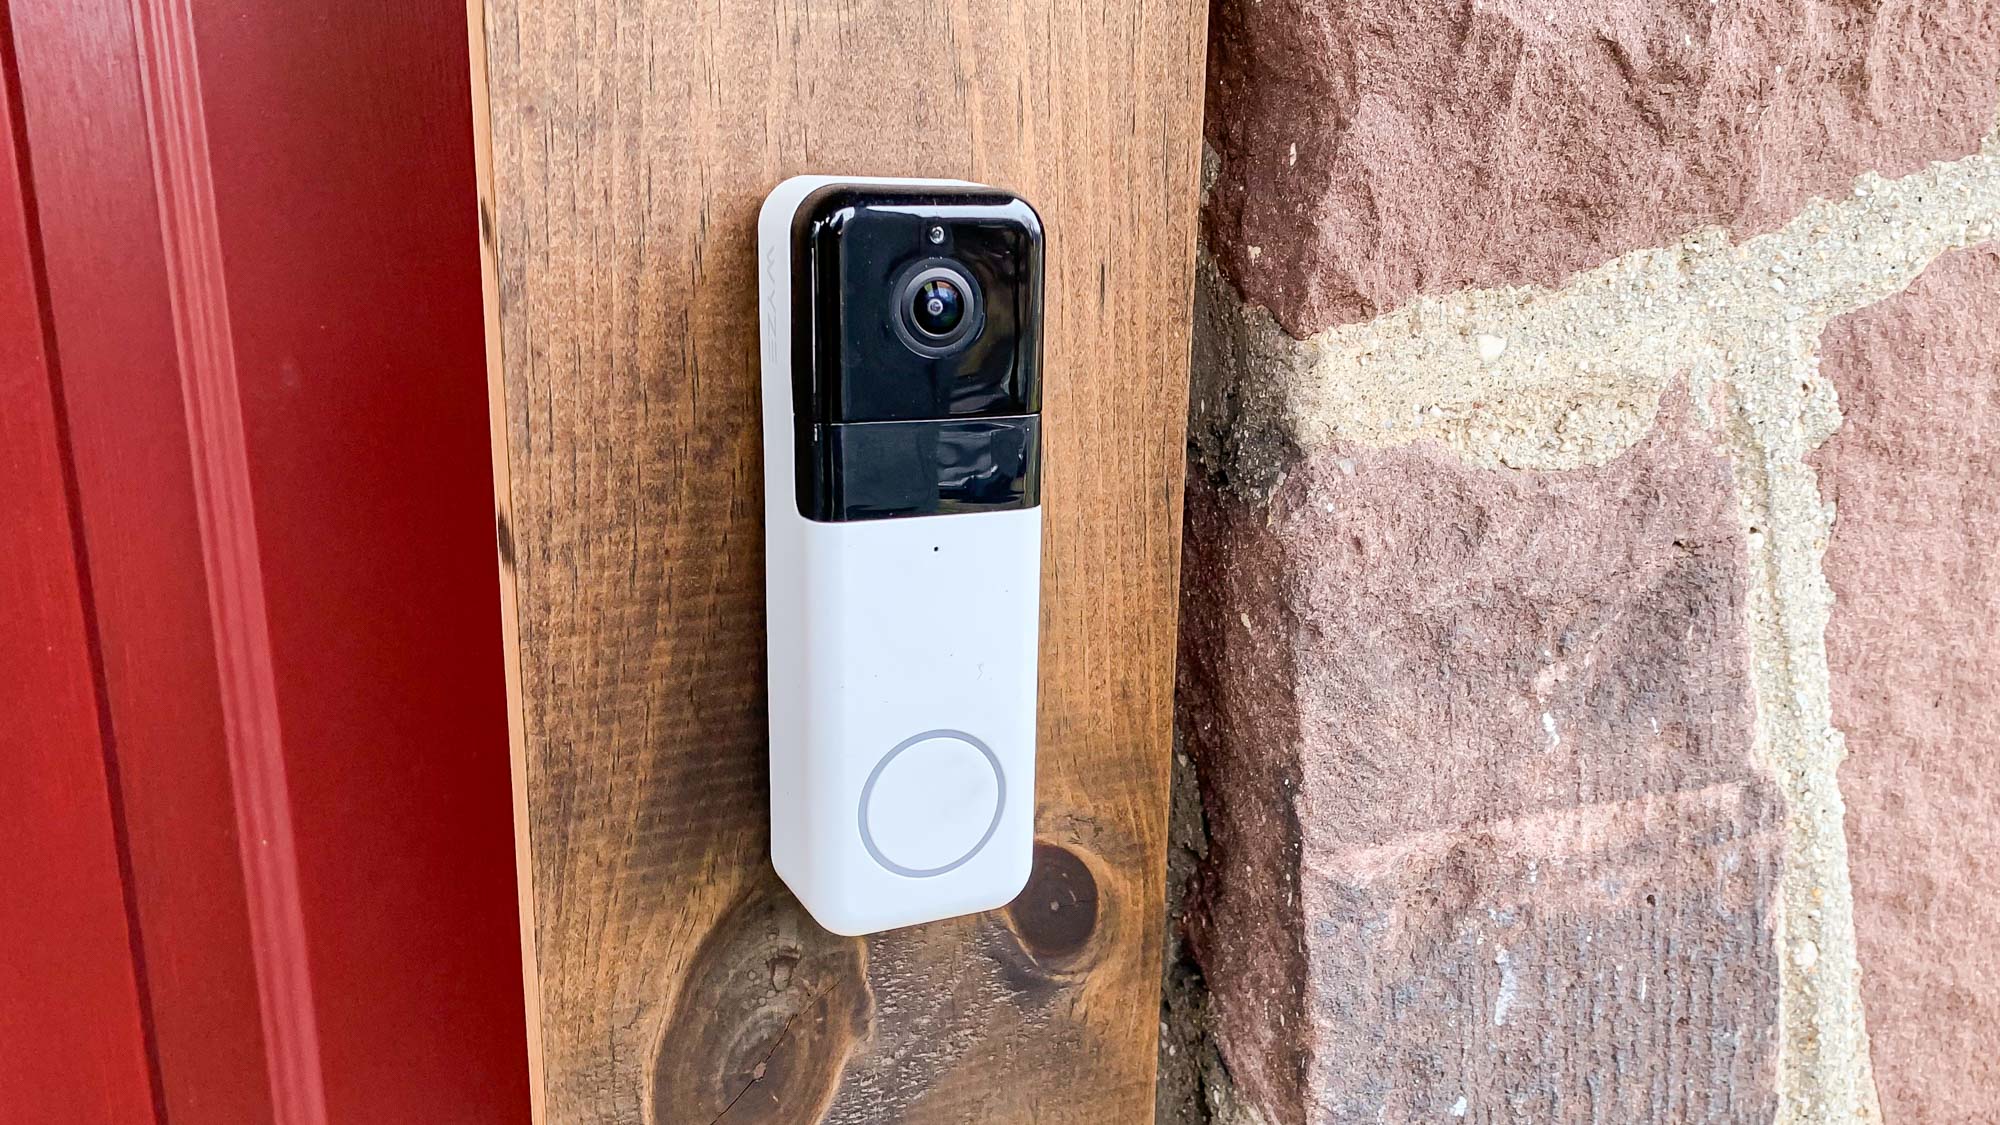 Wyze Video Doorbell Pro on doorframe